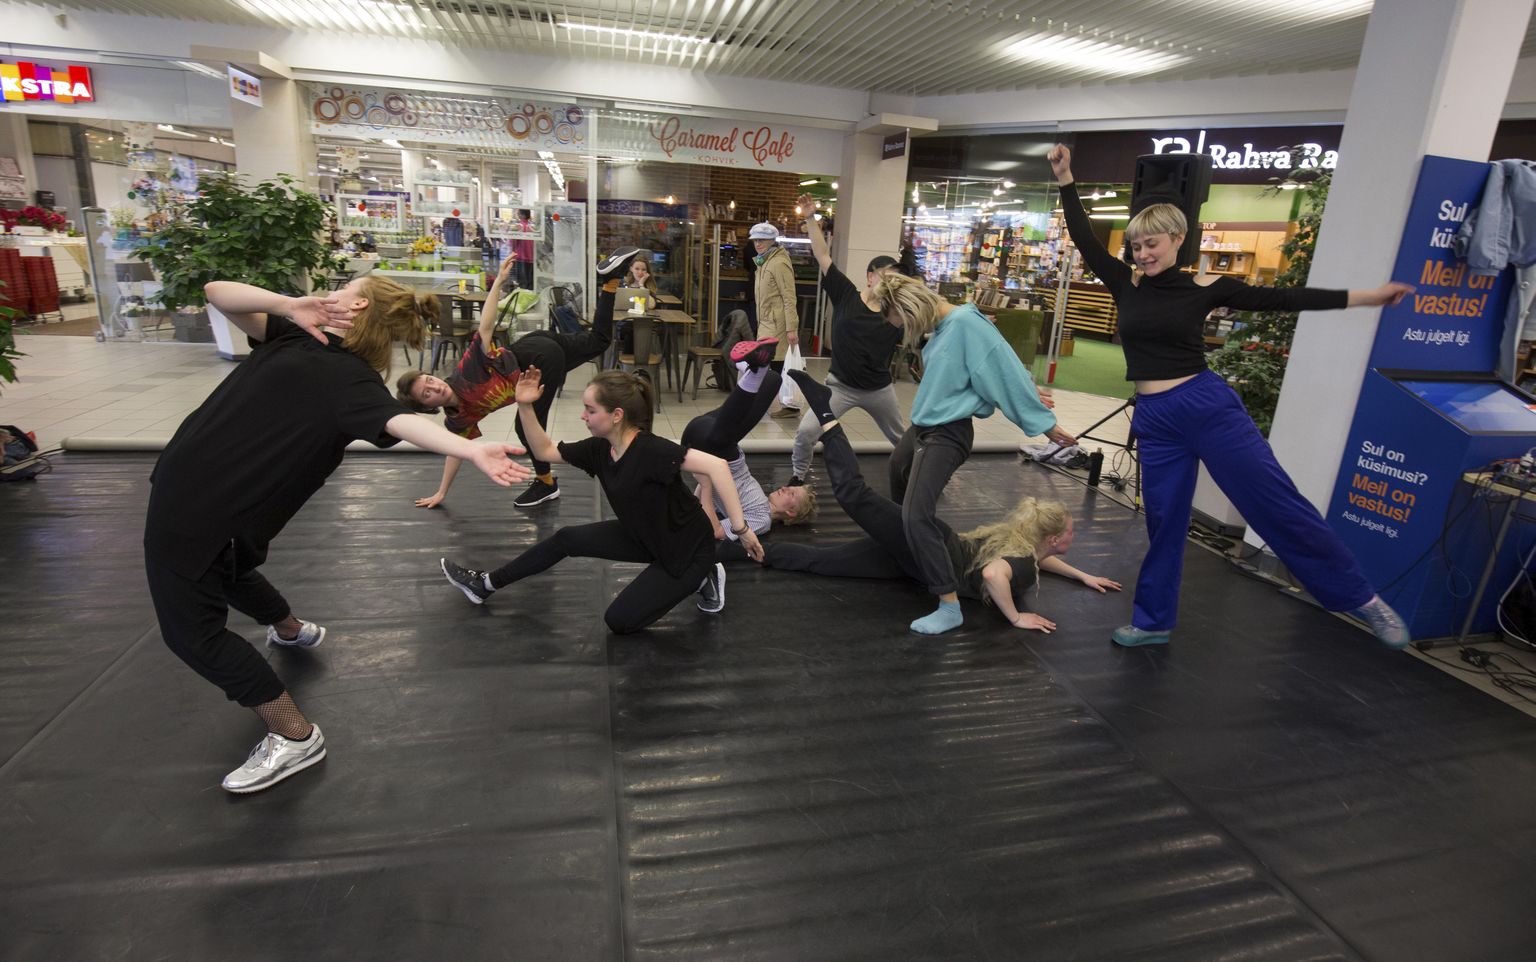 Kultuuriakadeemias tantsu õppivad noored tantsisid eile keset kaubanduskeskust jutti terve tööpäeva.